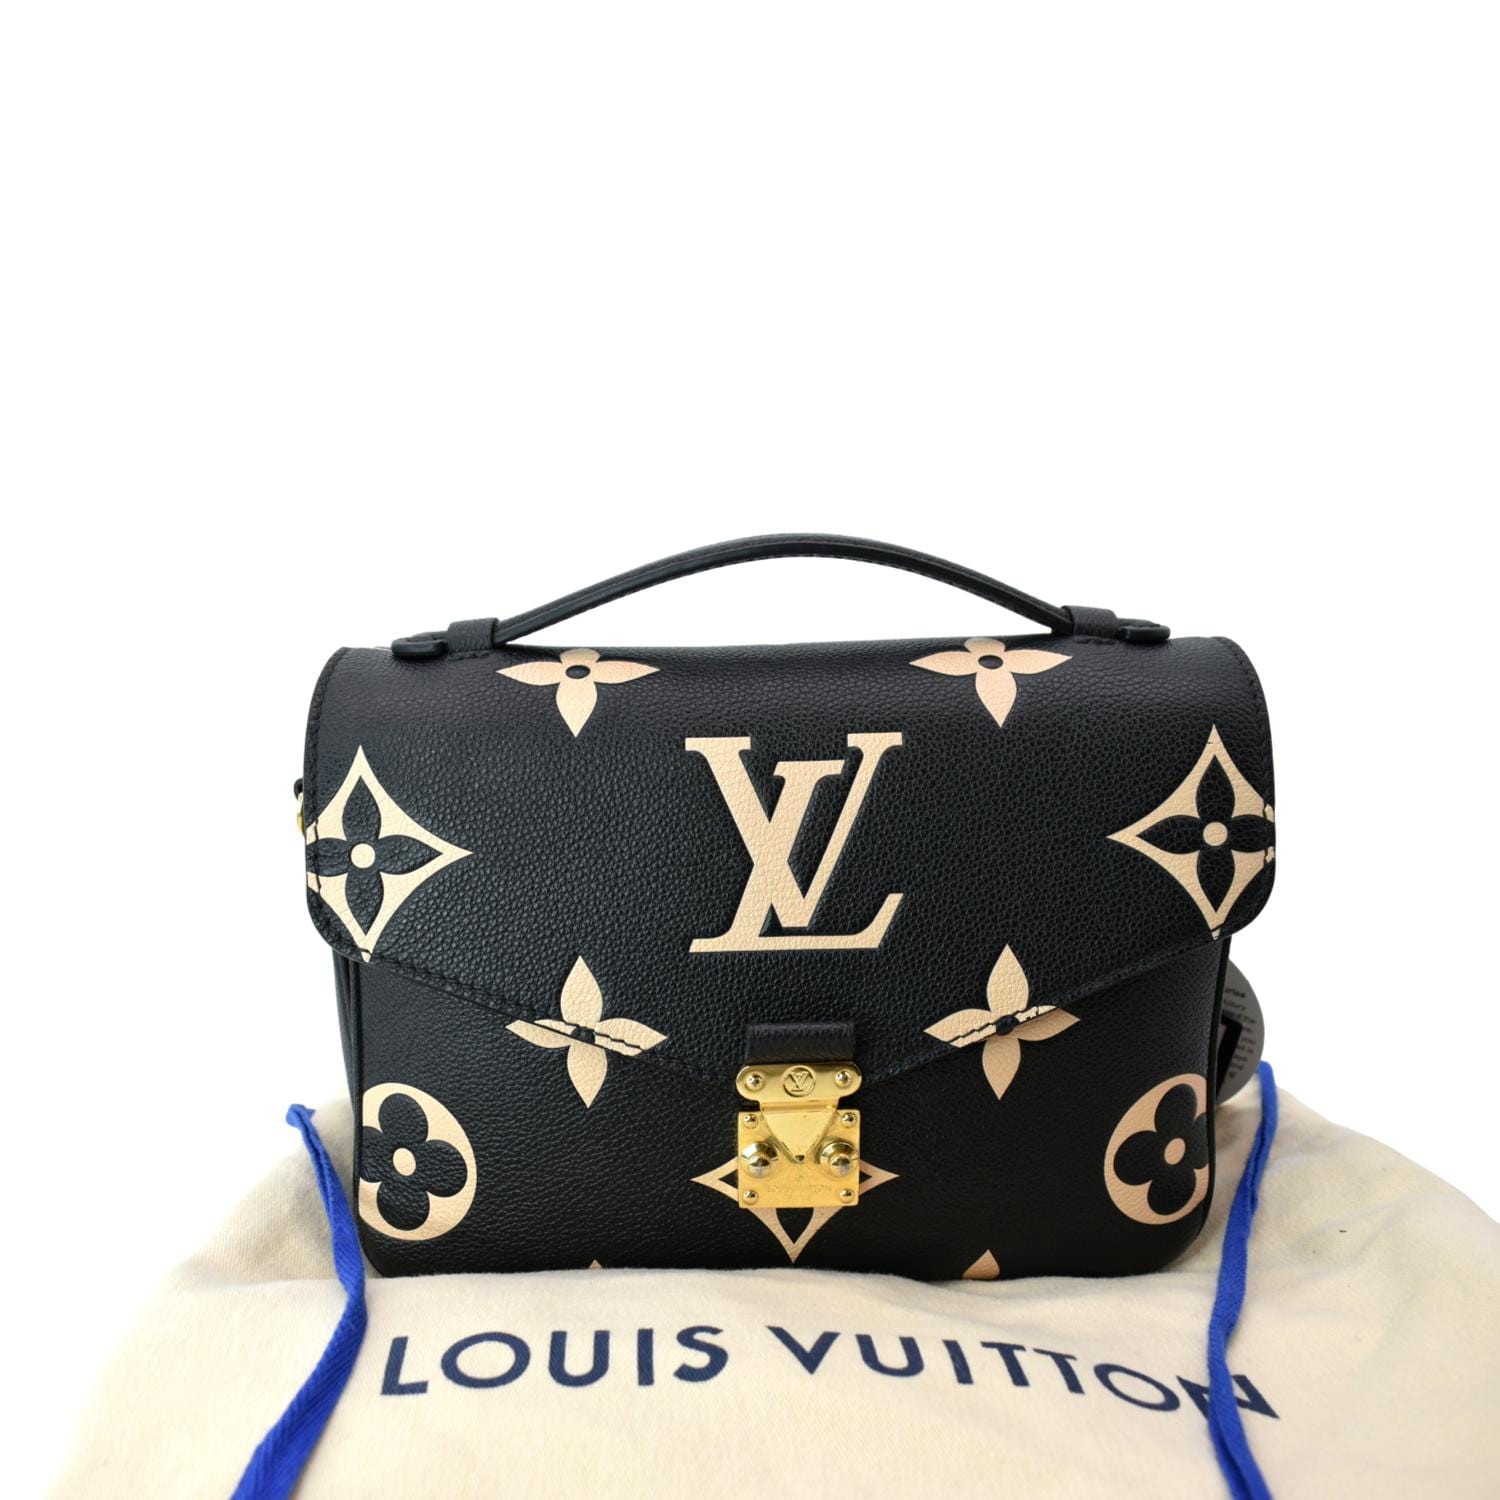 Louis Vuitton, Empreinte Metis Pochette